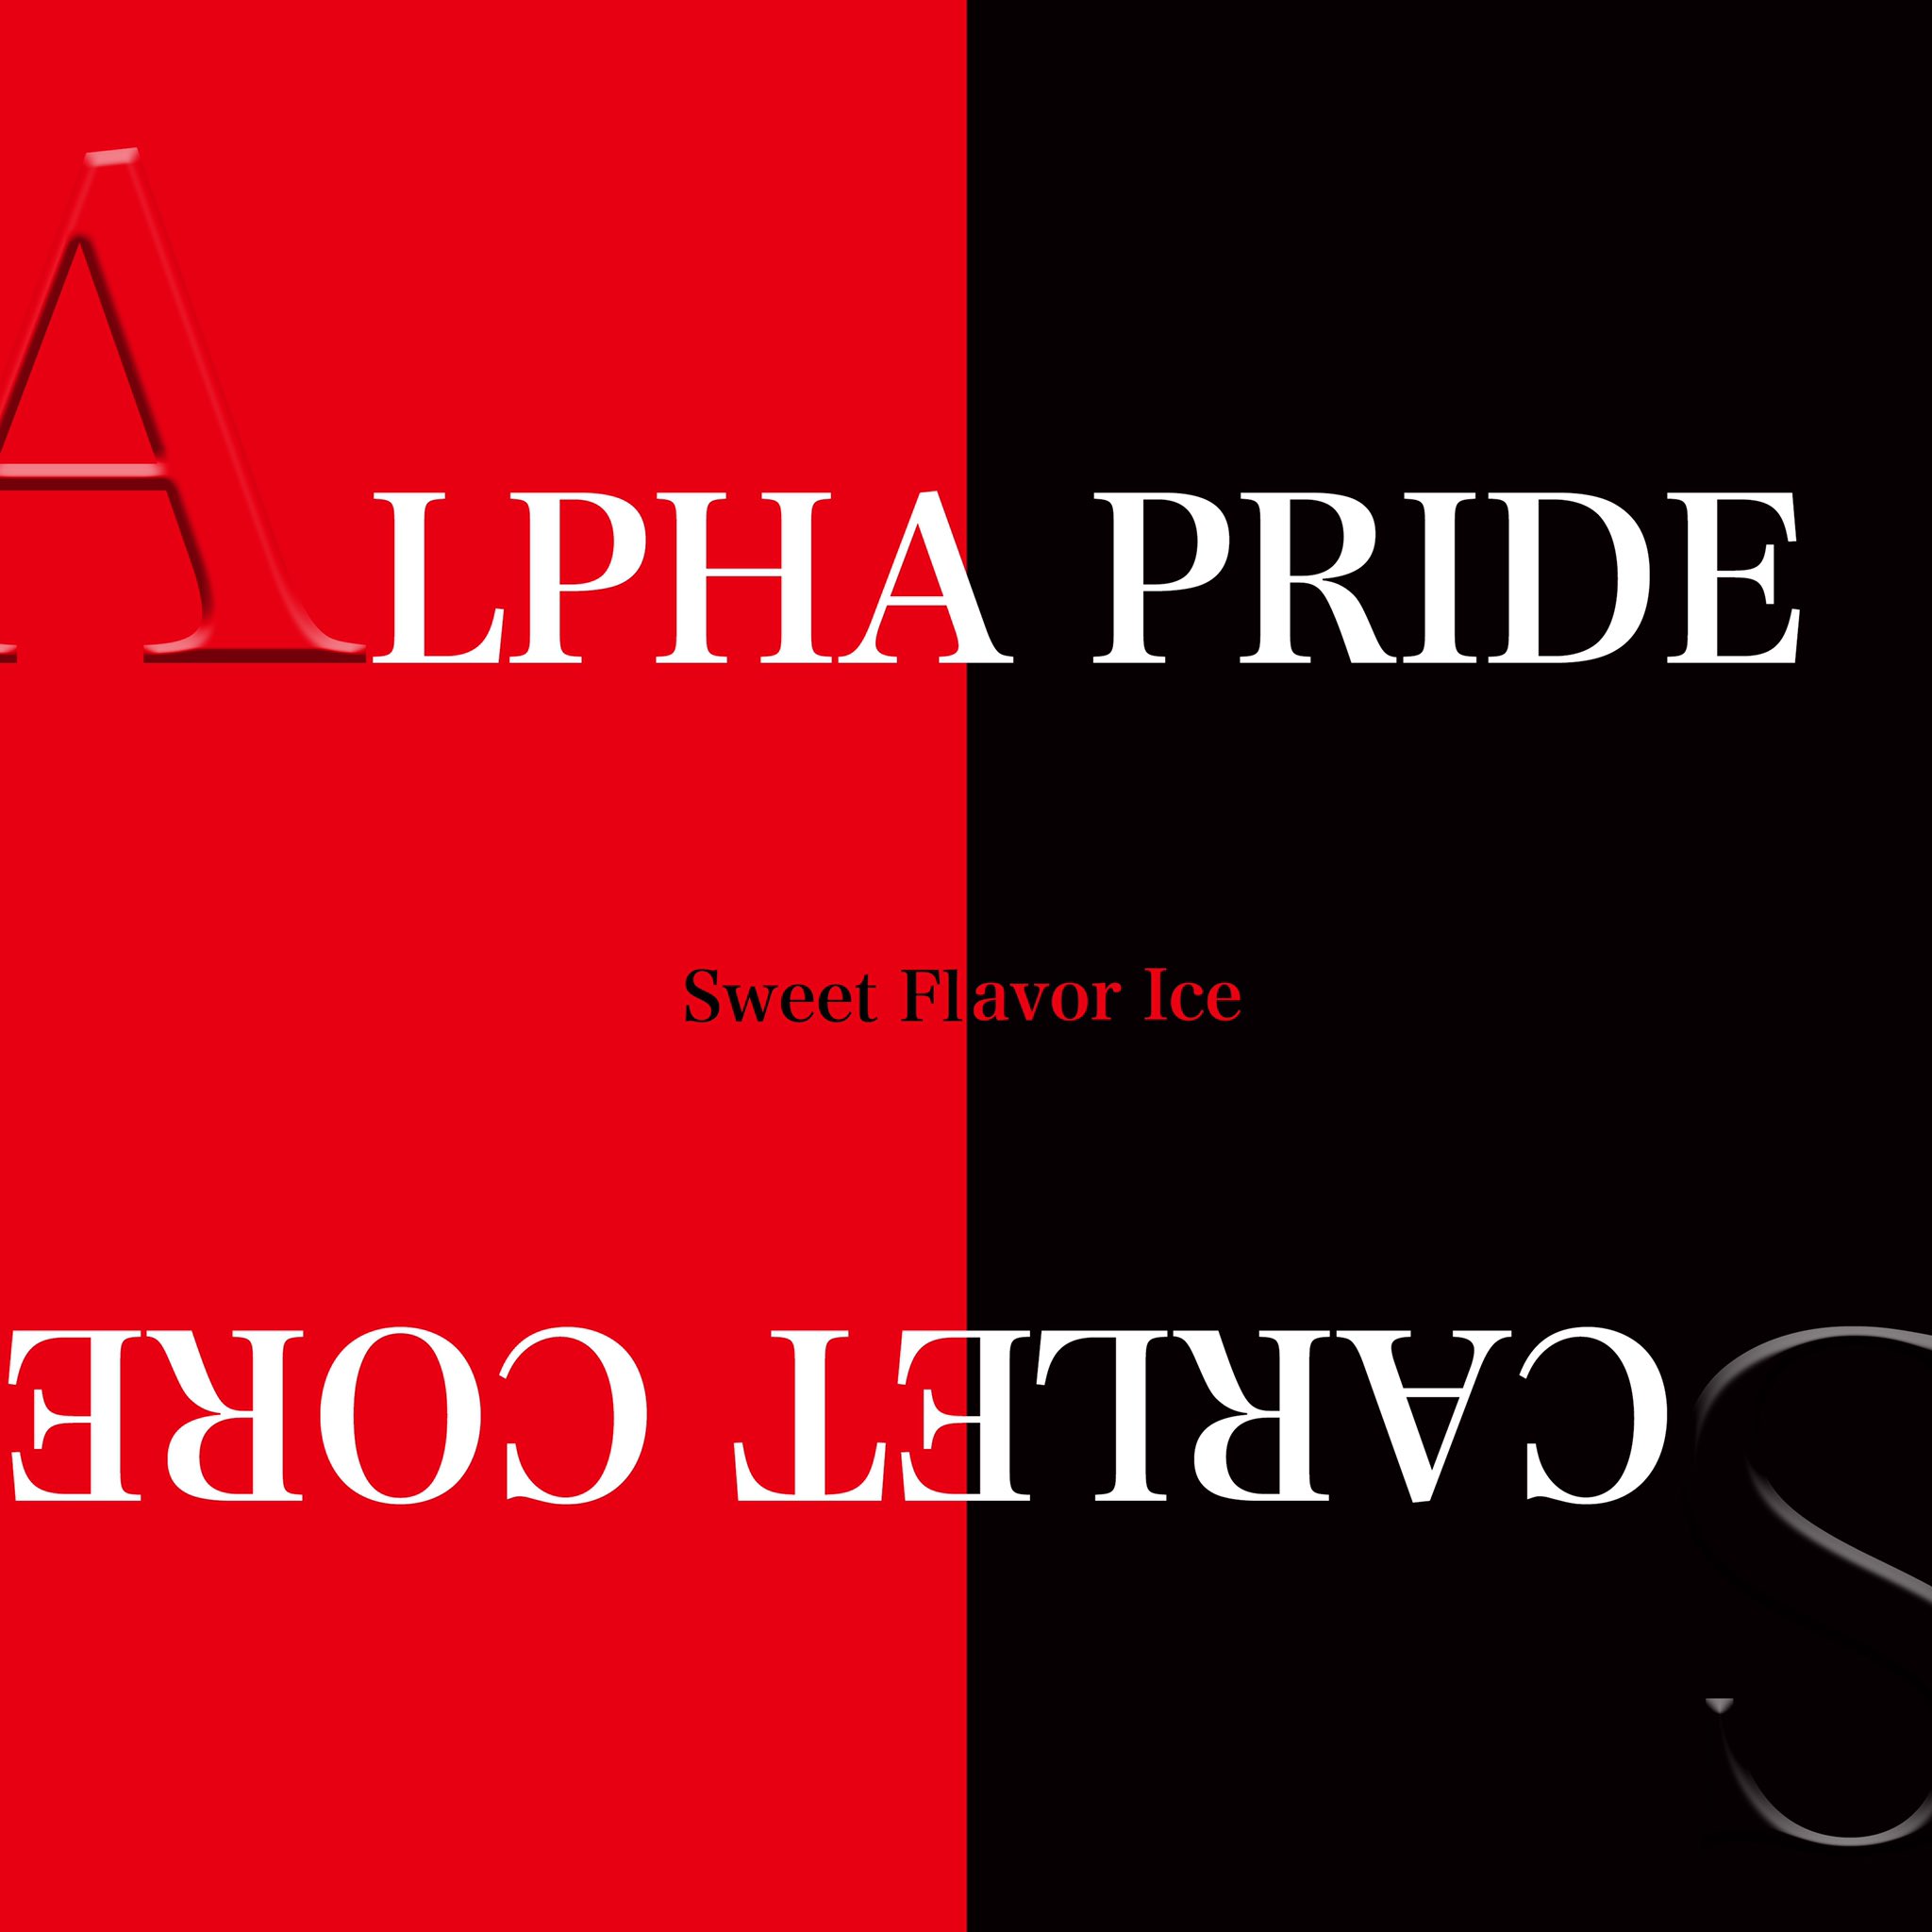 Sweet Flavor Ice 活動停止中 本日より 新曲 Alpha Pride Scarlet Core が各配信先よりリリースされました 最高にかっこいいダブルa面のシングルになりました 是非一度ご視聴ください スイフレ バンド 邦楽 邦ロック 邦ロック好きrt